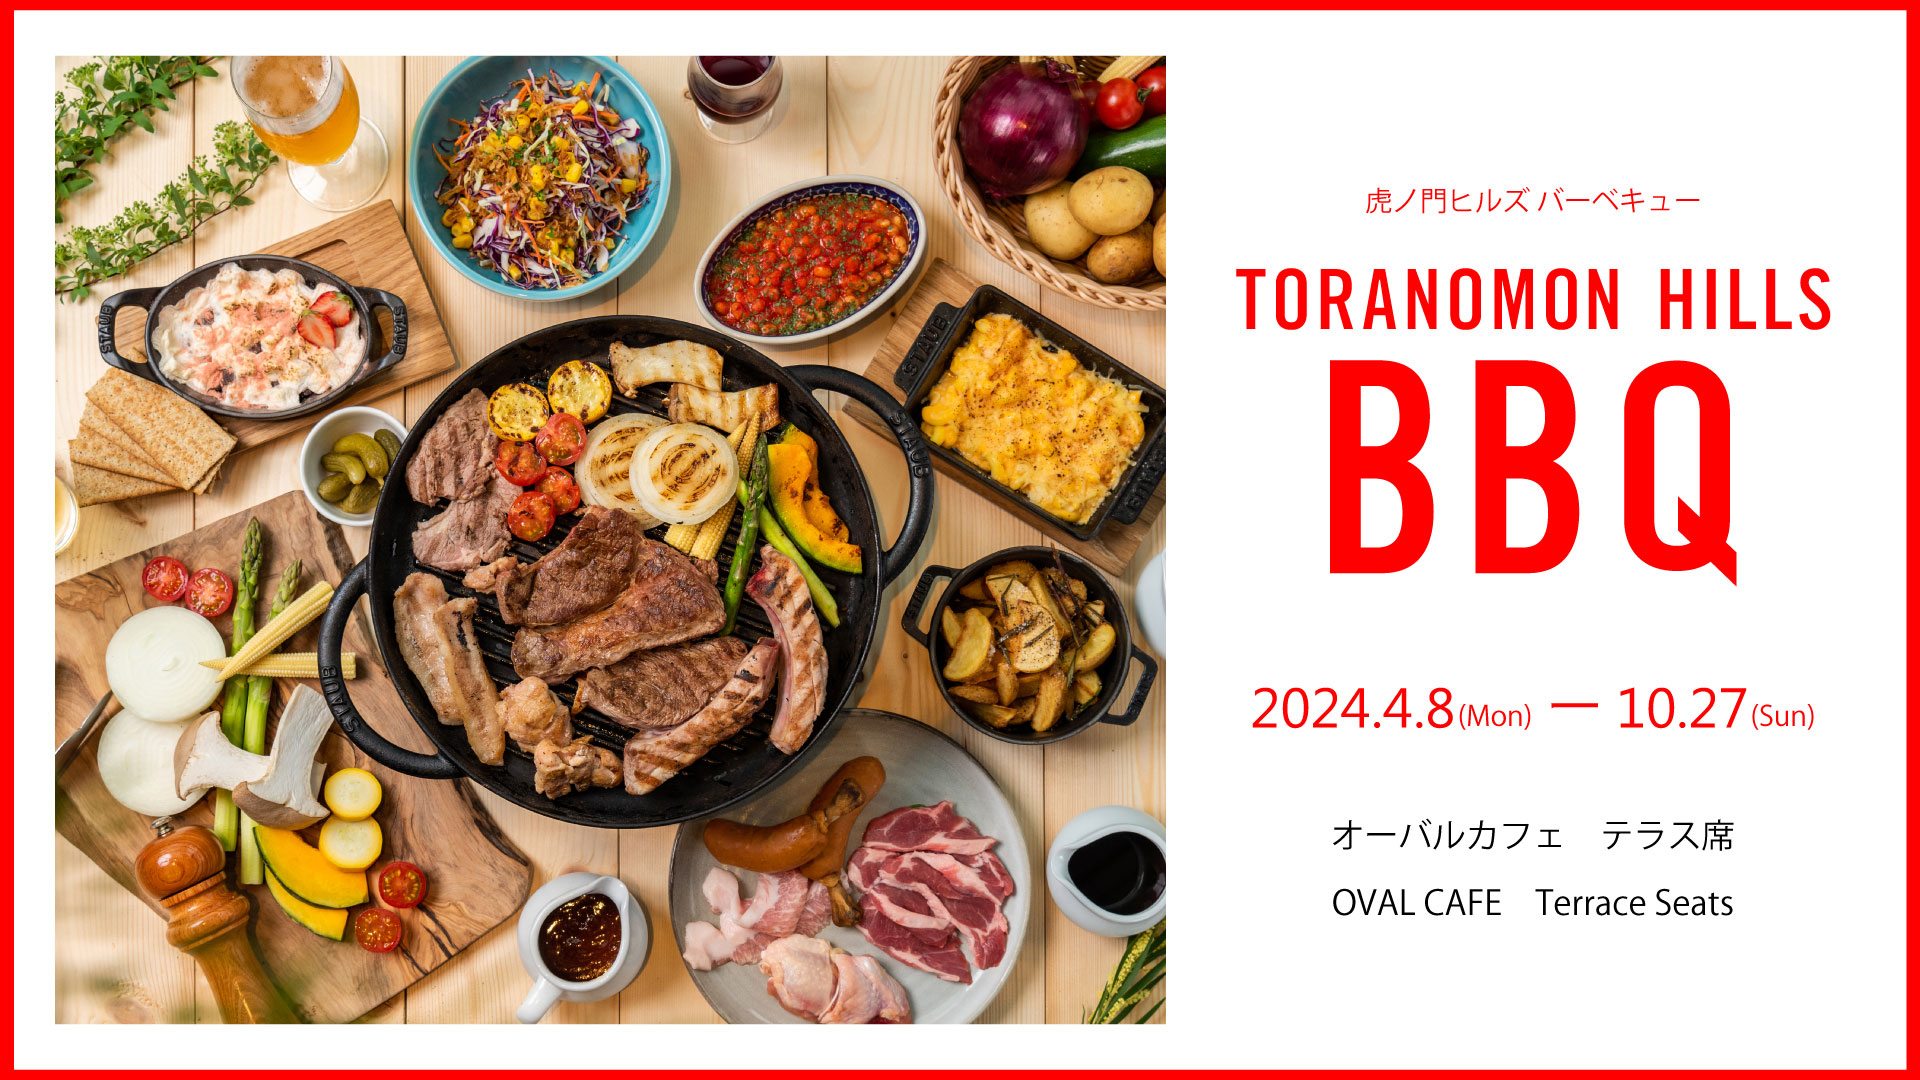 TORANOMON HILLS BBQ 虎ノ門ヒルズバーベキュー2024